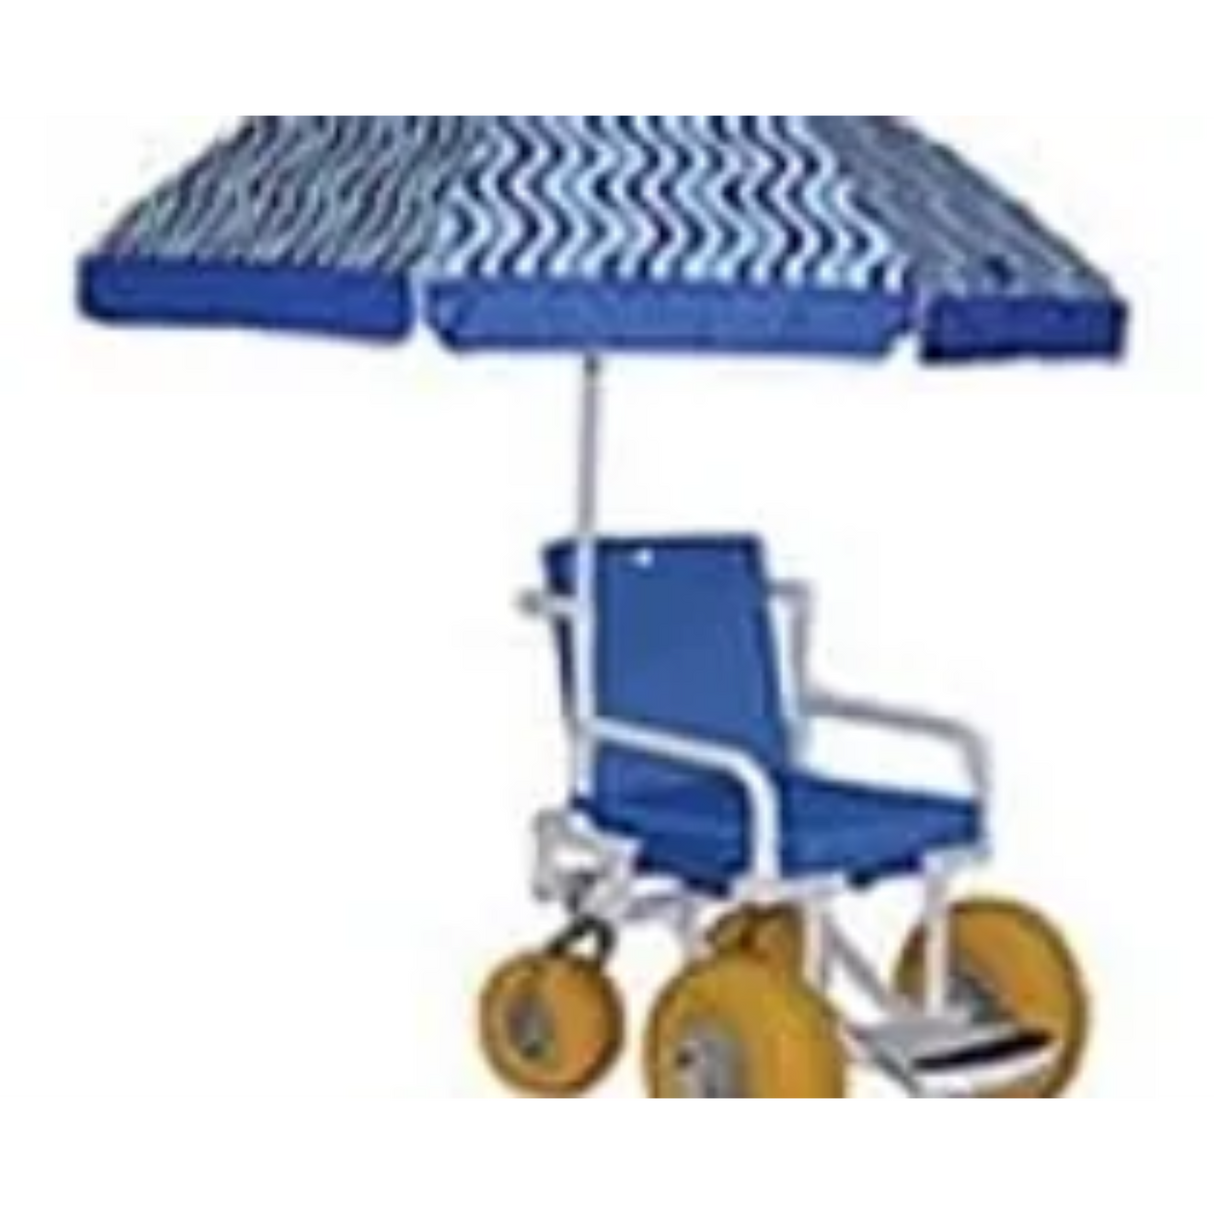 AccessRec PVC Beach Wheelchairs